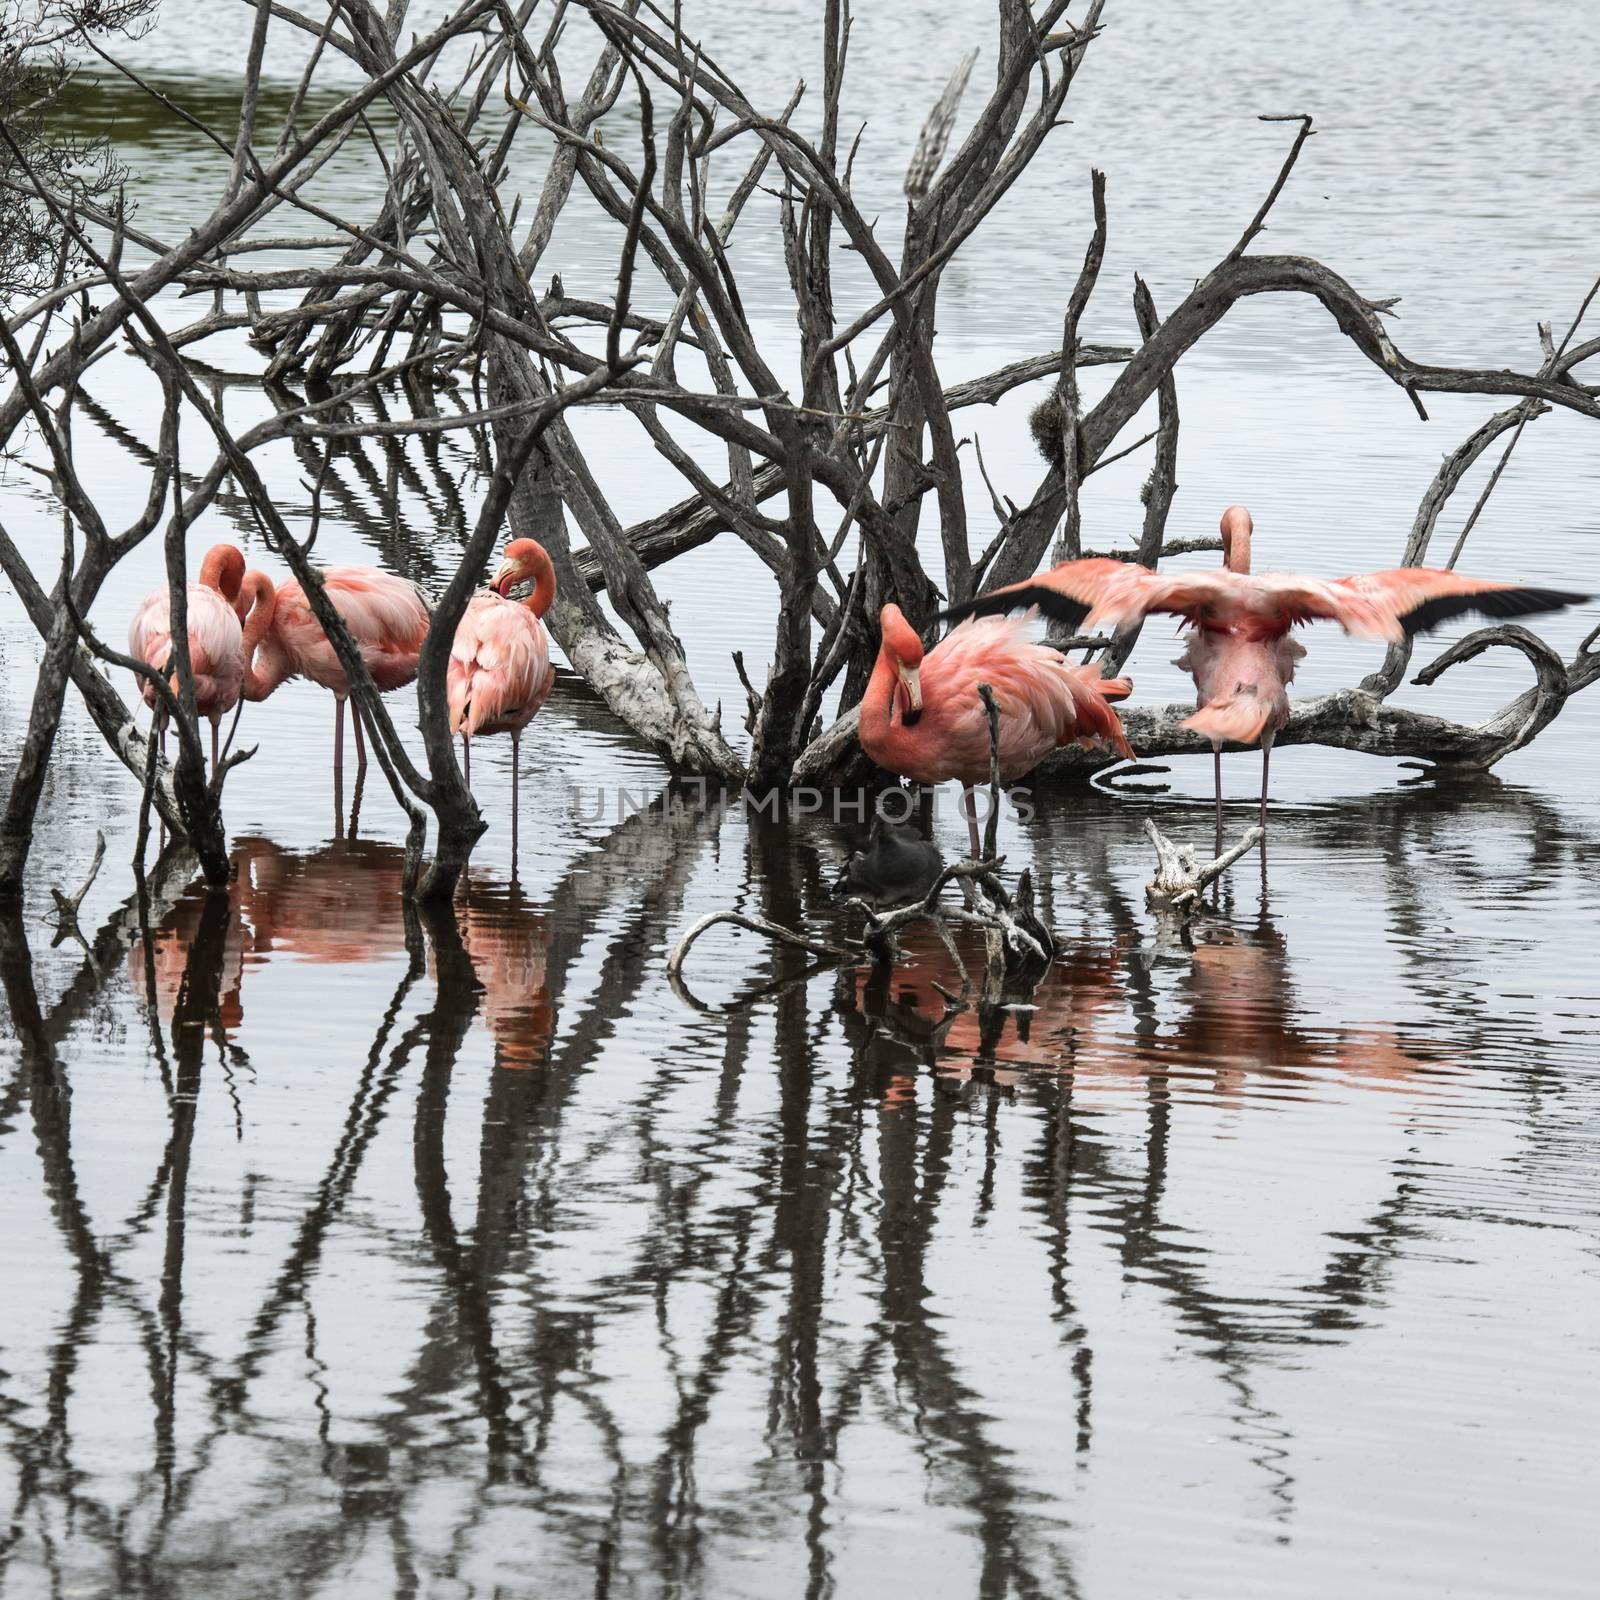 Flamingos, Galapagos Islands by xura